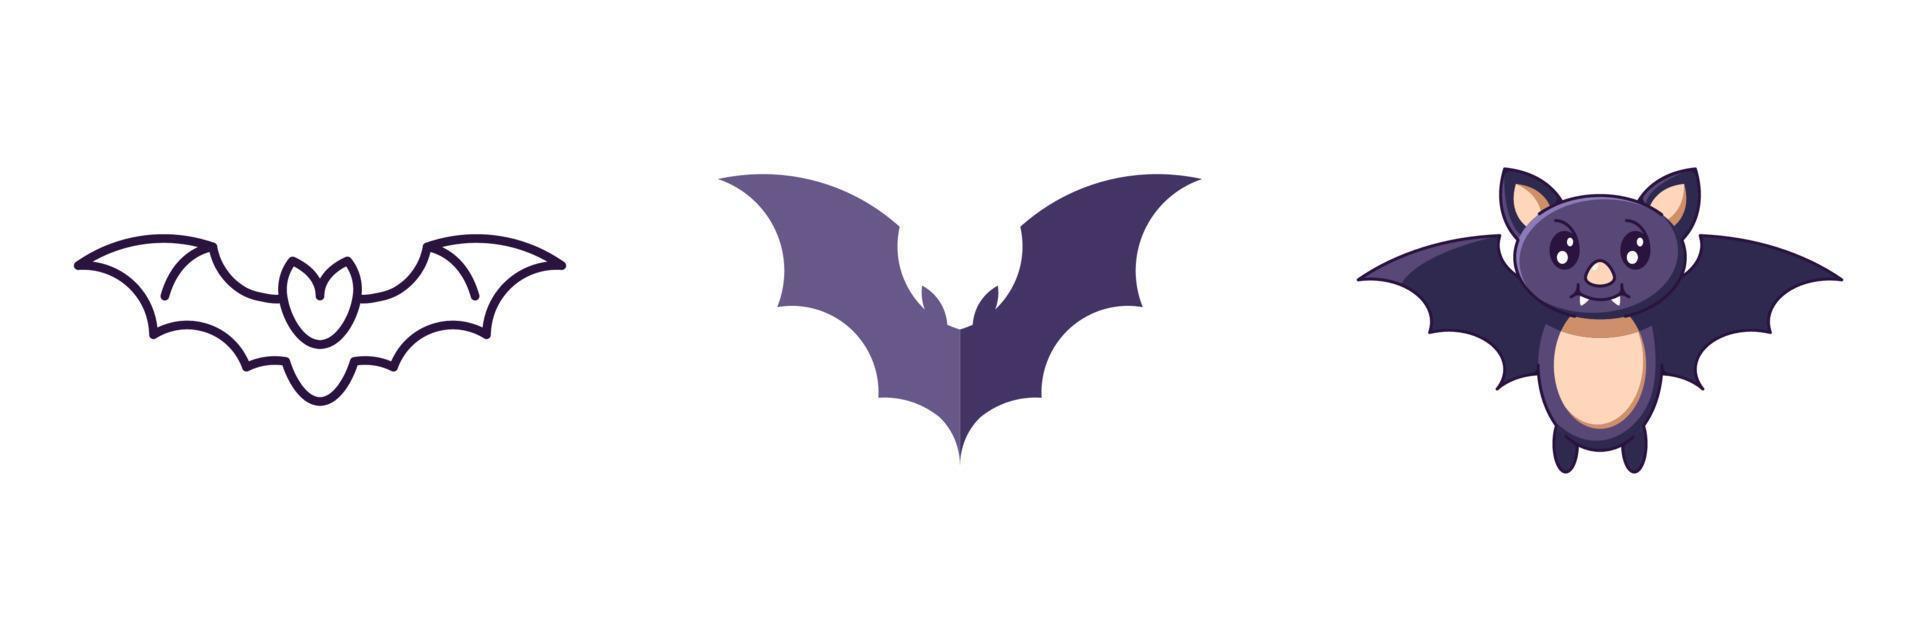 elementos de halloween el conjunto de iconos vectoriales de murciélago se dibuja en línea, plano y estilos de dibujos animados. perfecto para aplicaciones, libros, artículos, tiendas, tiendas, anuncios vector